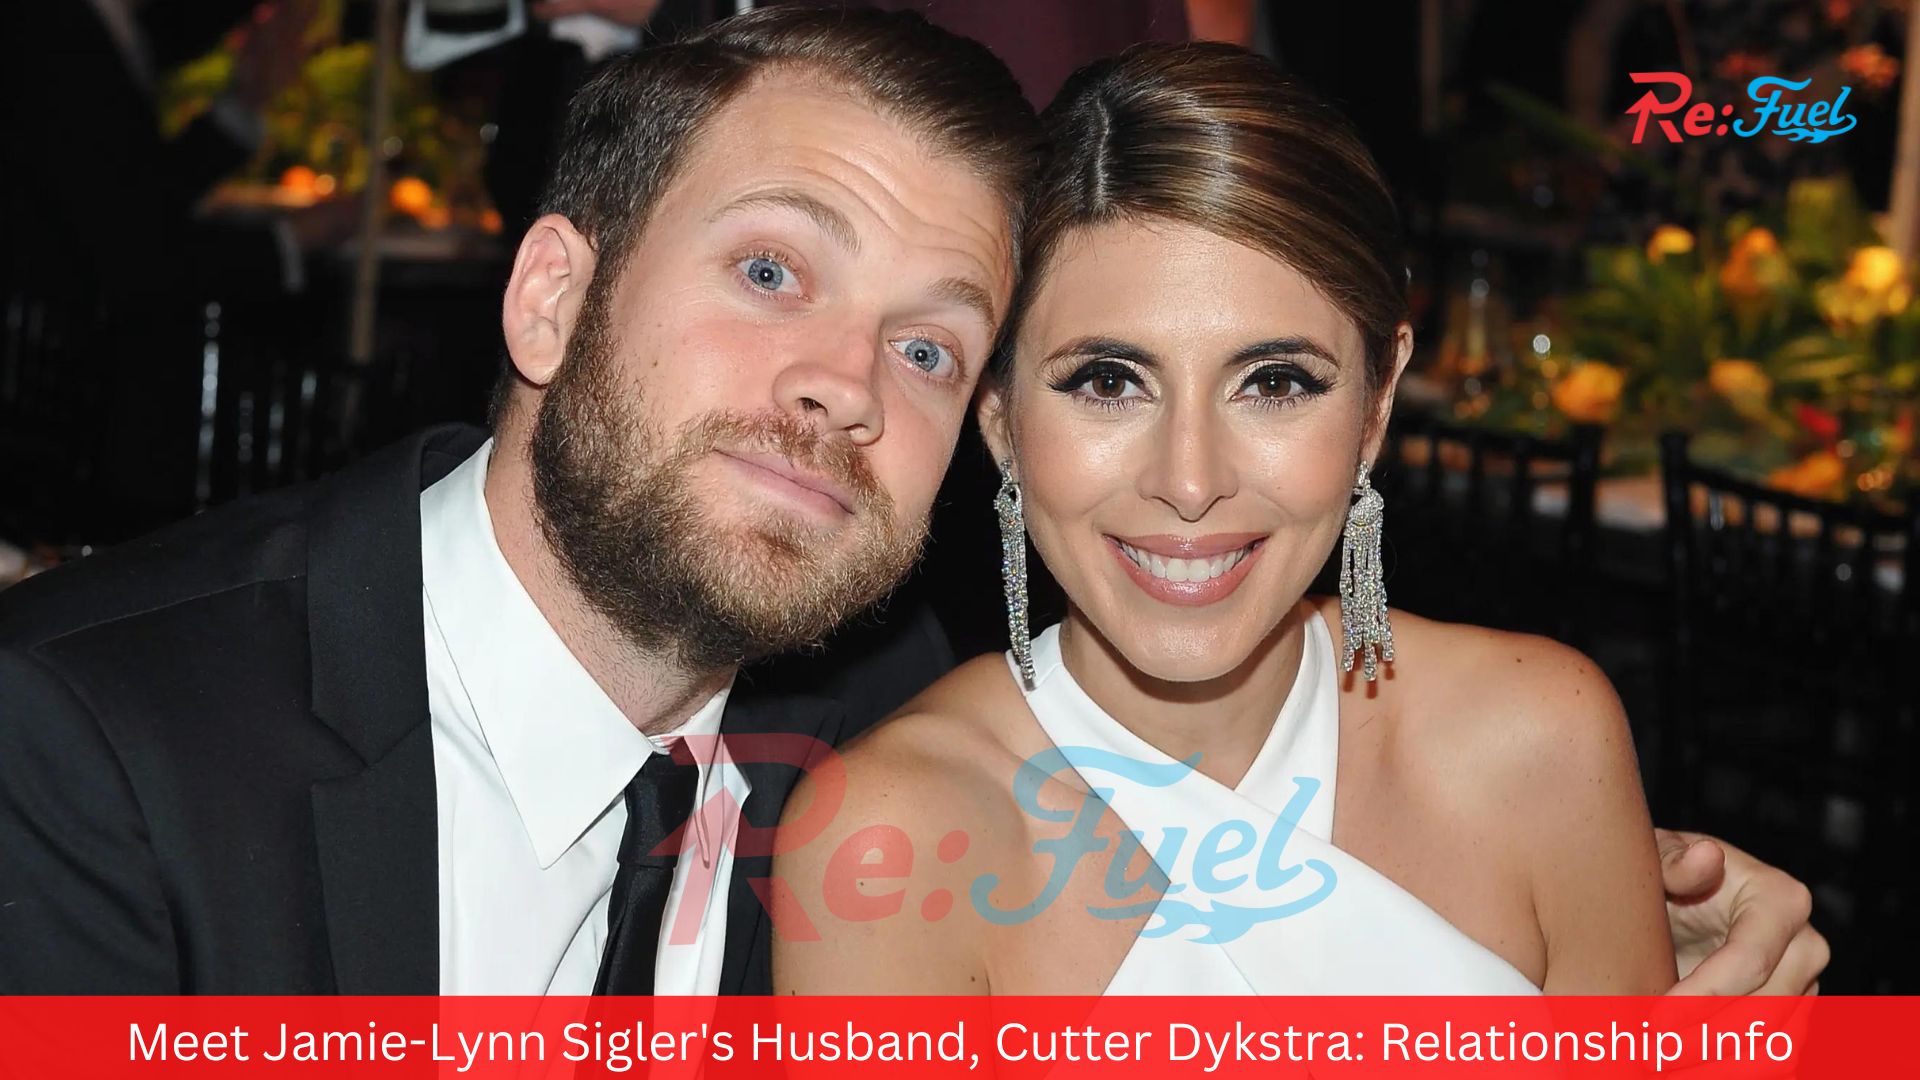 Meet Jamie-Lynn Sigler's Husband, Cutter Dykstra: Relationship Info